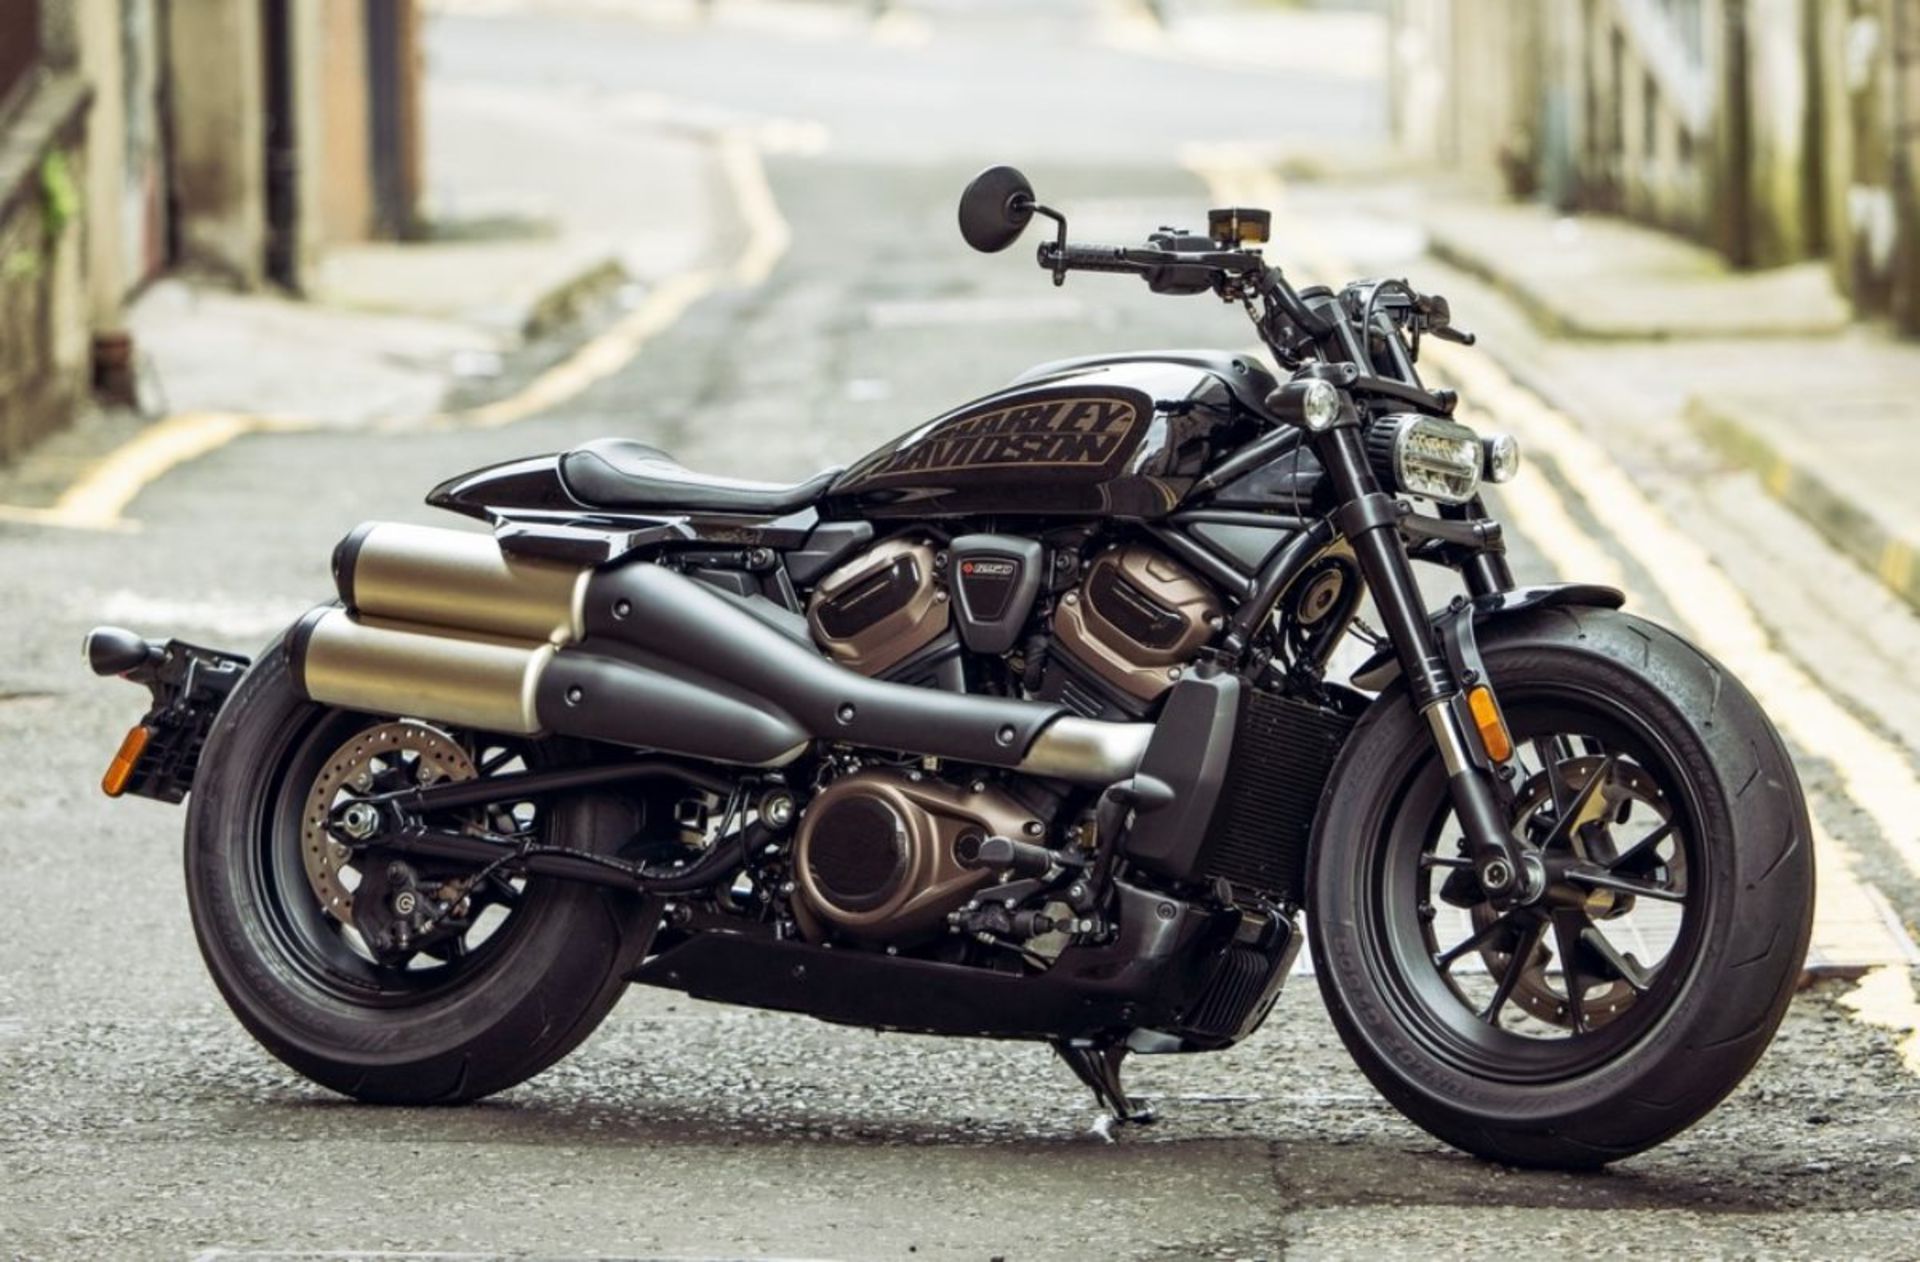  Harley Davidson sportster هارلی دیویدسن 2022 اسپرتستر